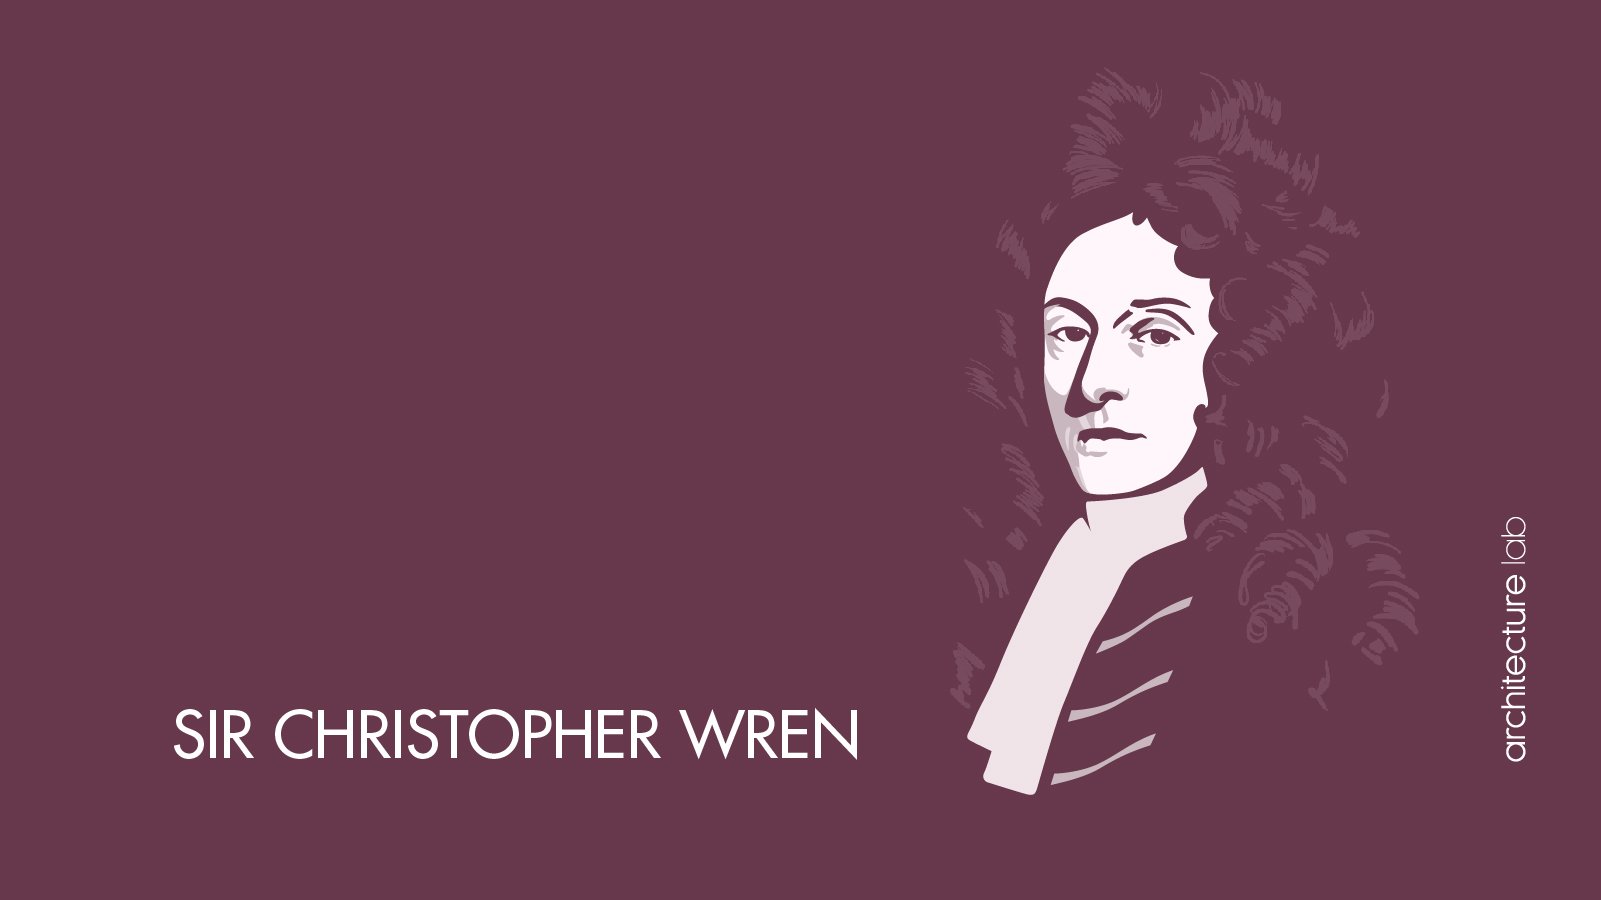 1. Sir christopher wren